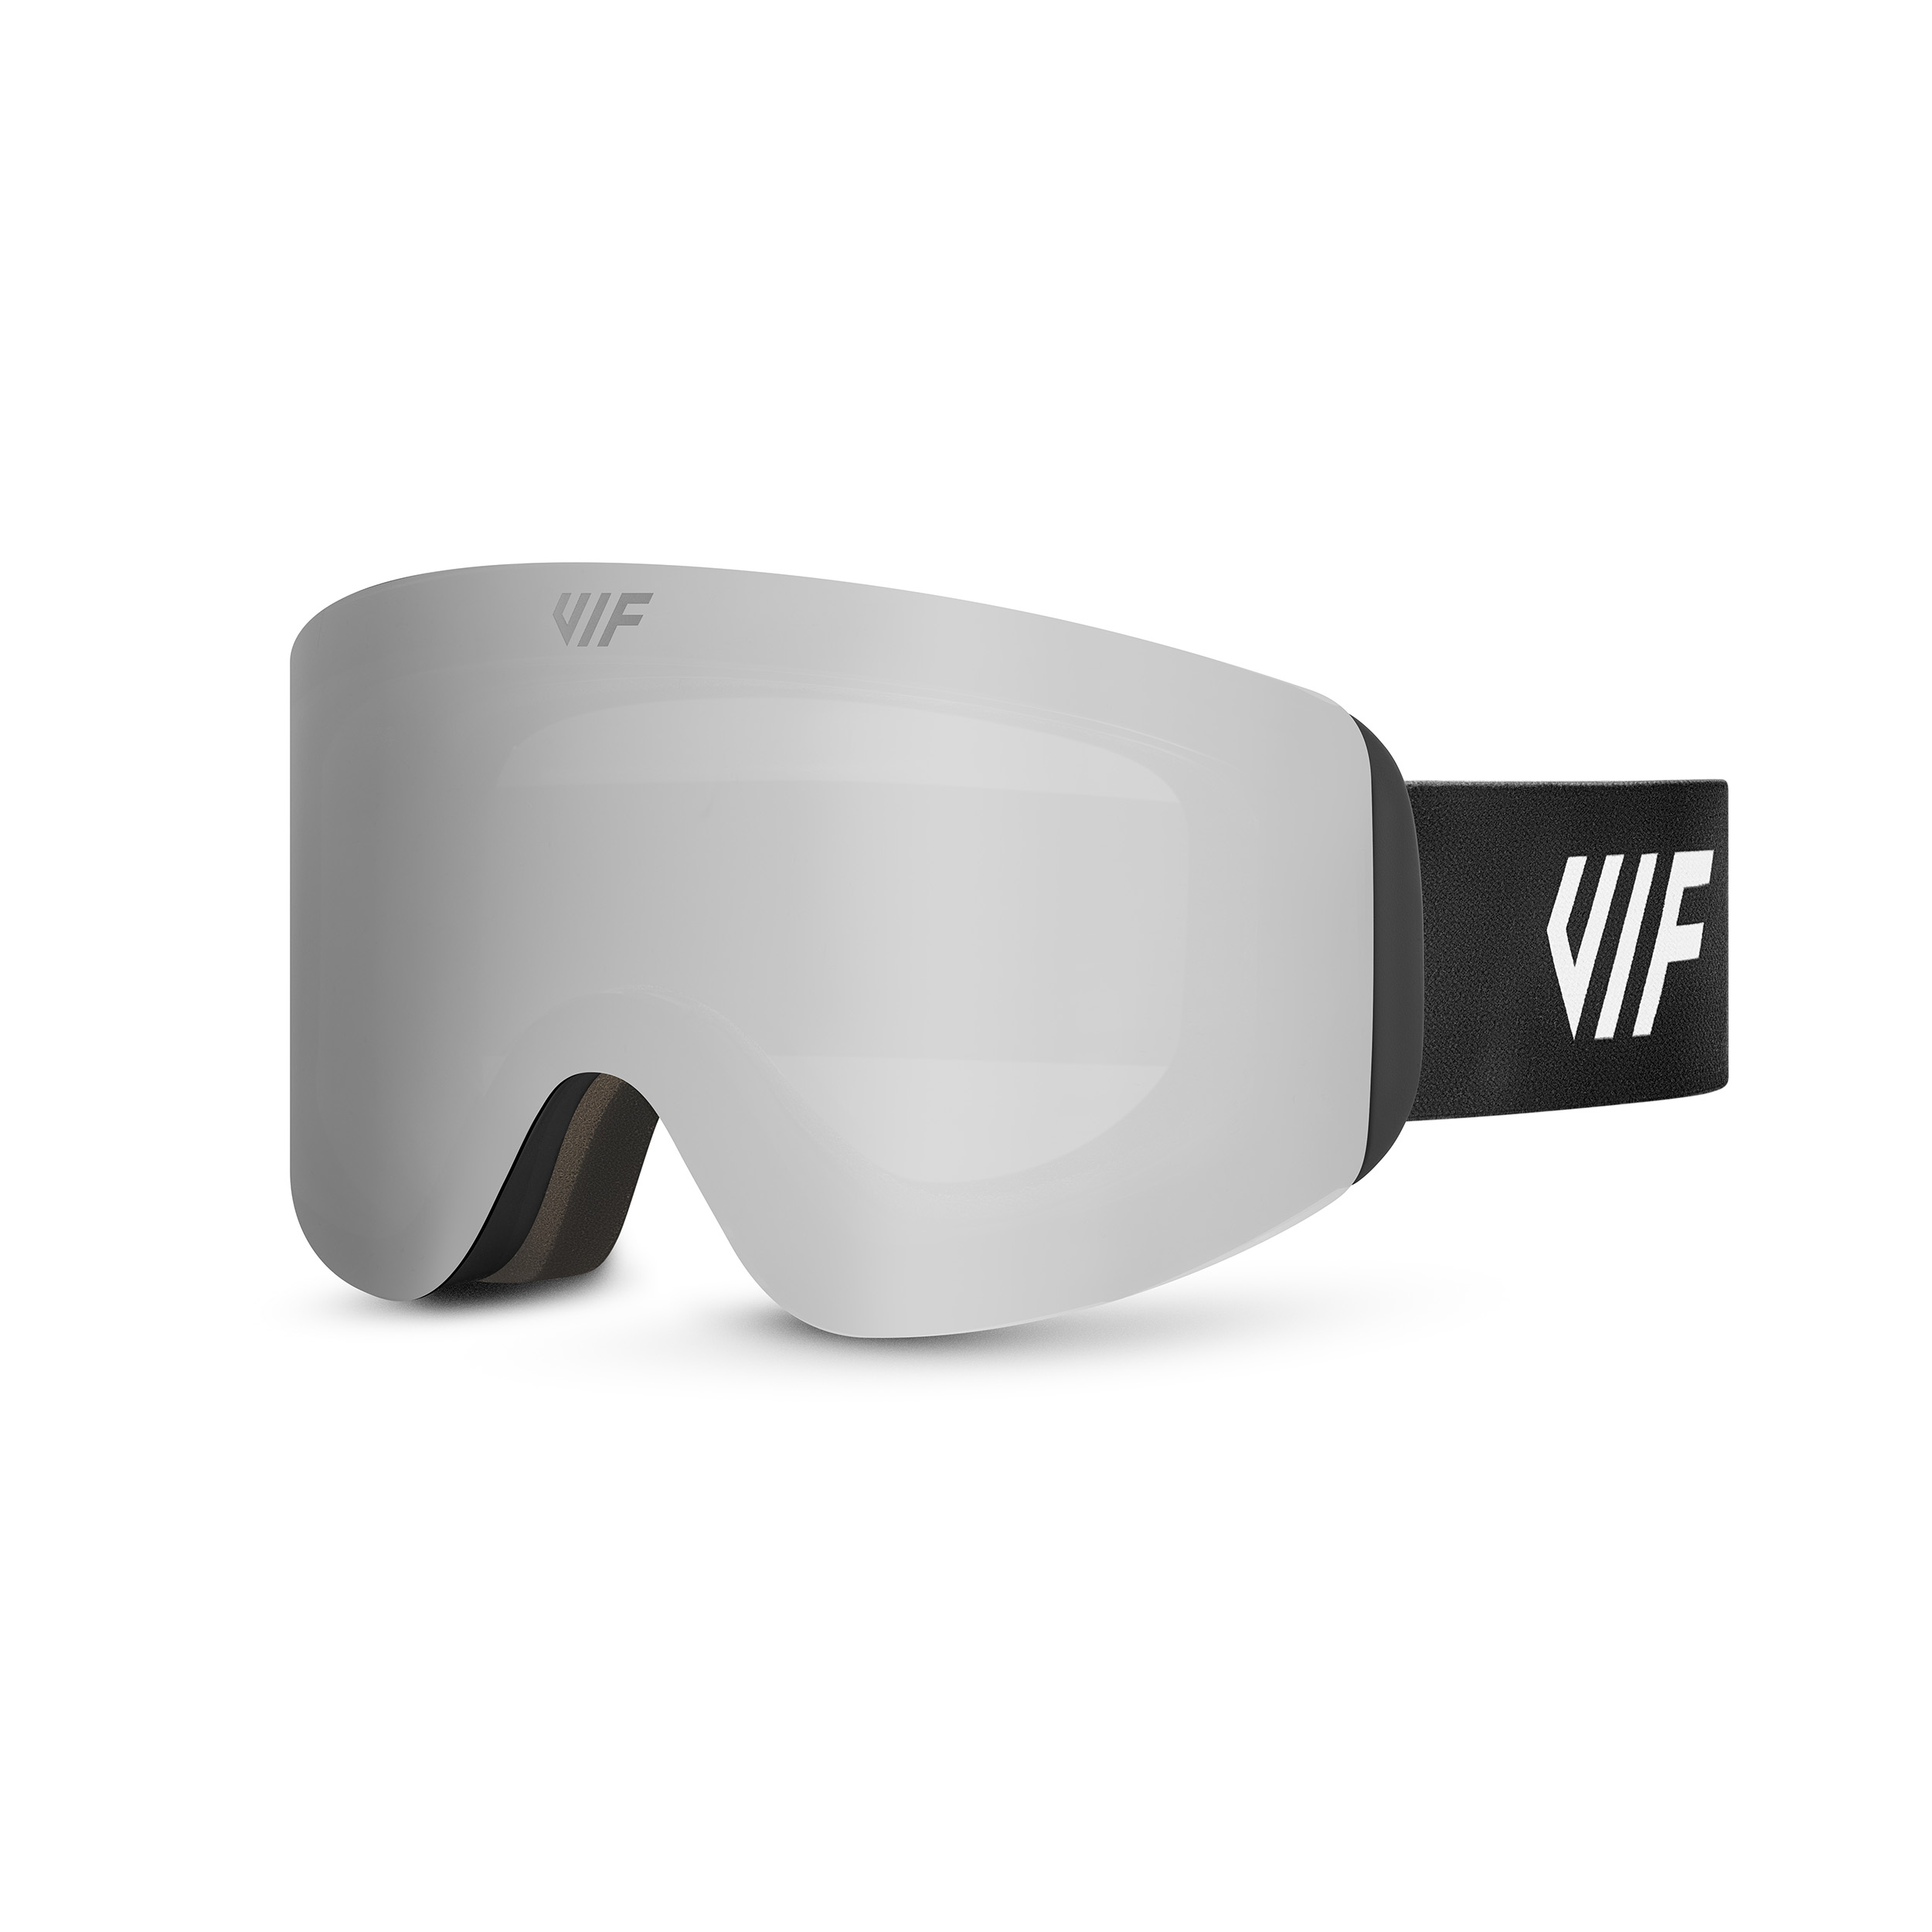 Lyžařské a snowboardové brýle VIF SKI & SNB Black x Silver